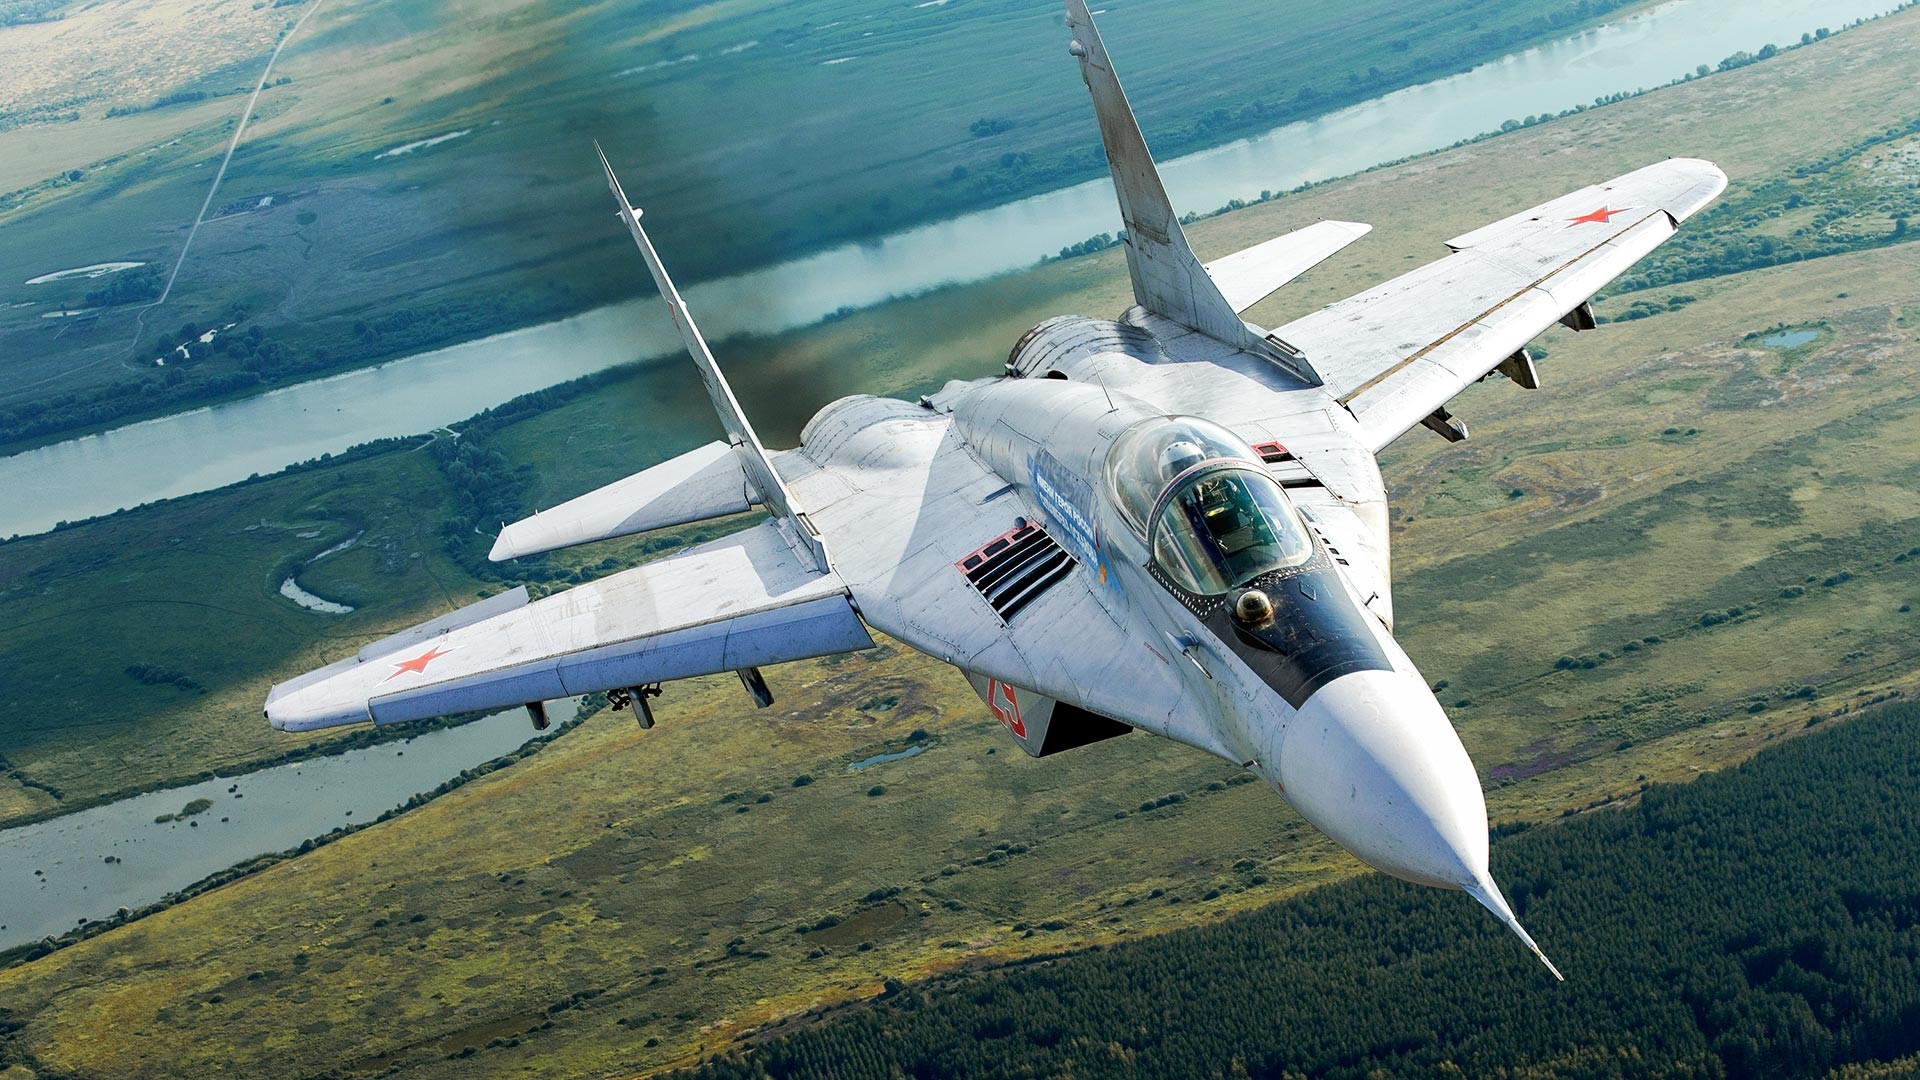 MiG-29S.
